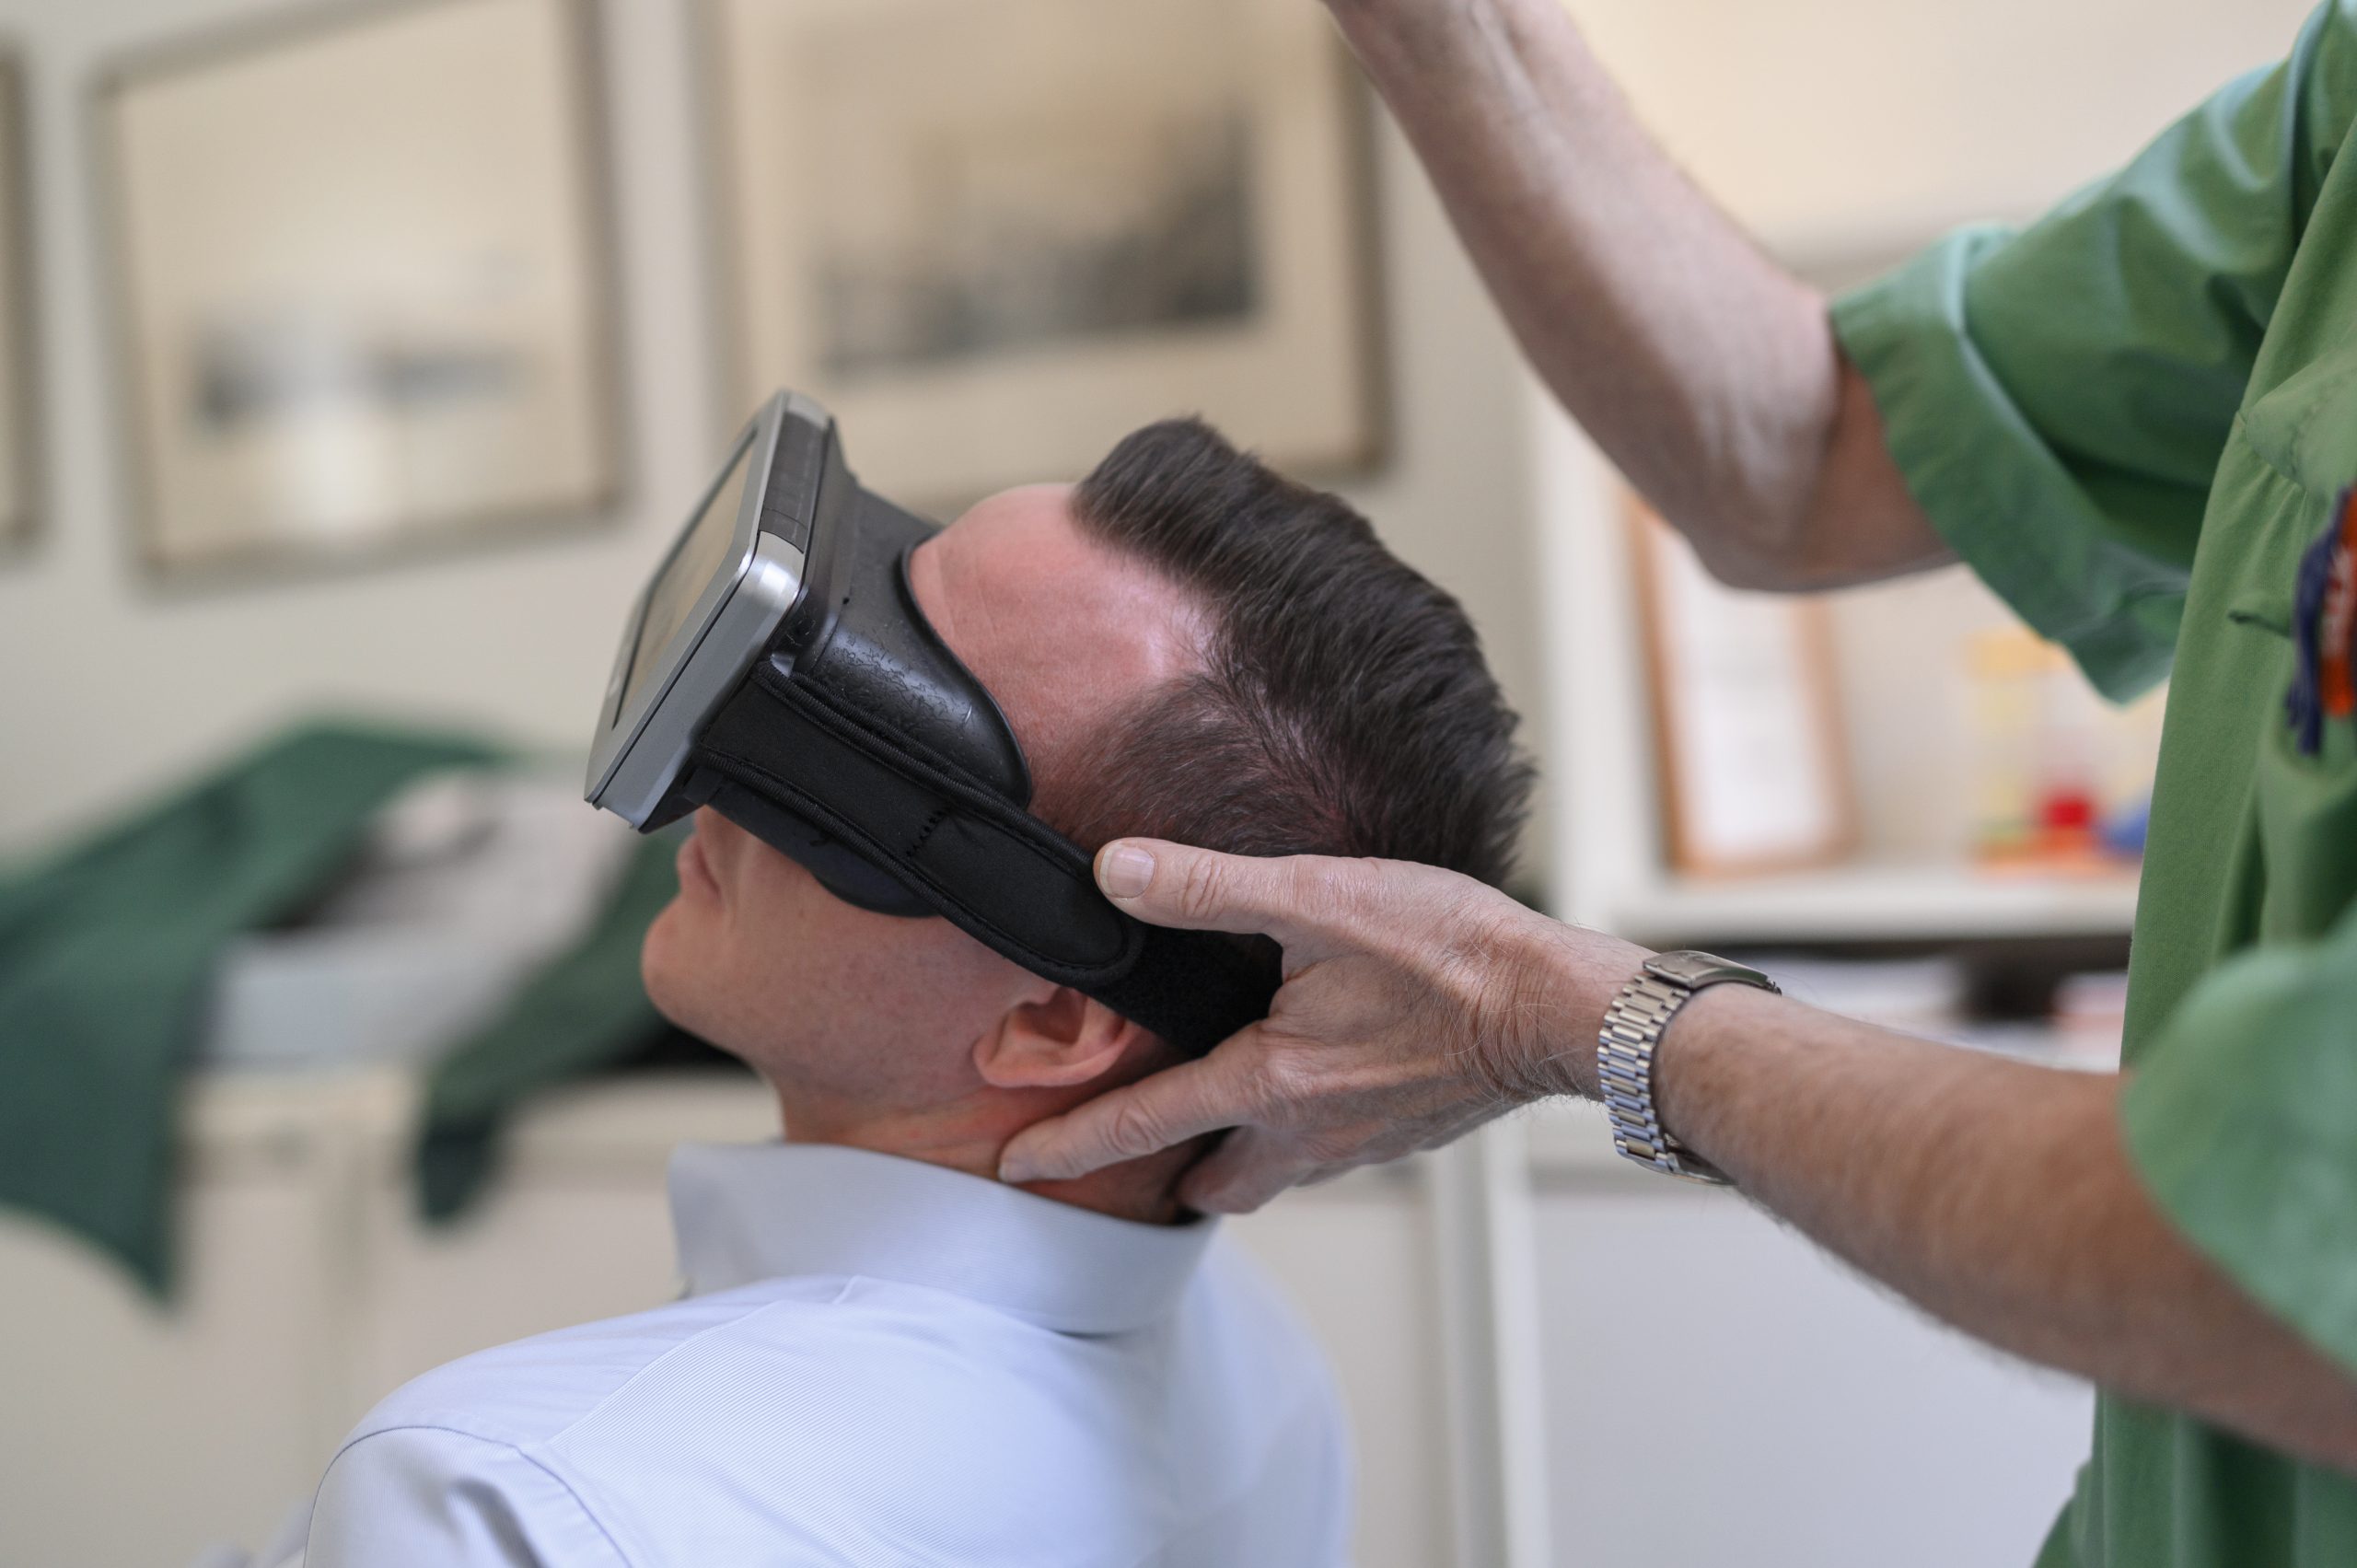 Patient lutar huvudet på sned med glasögon för att undersöka yrsel och kristallsjuka på Vasakliniken